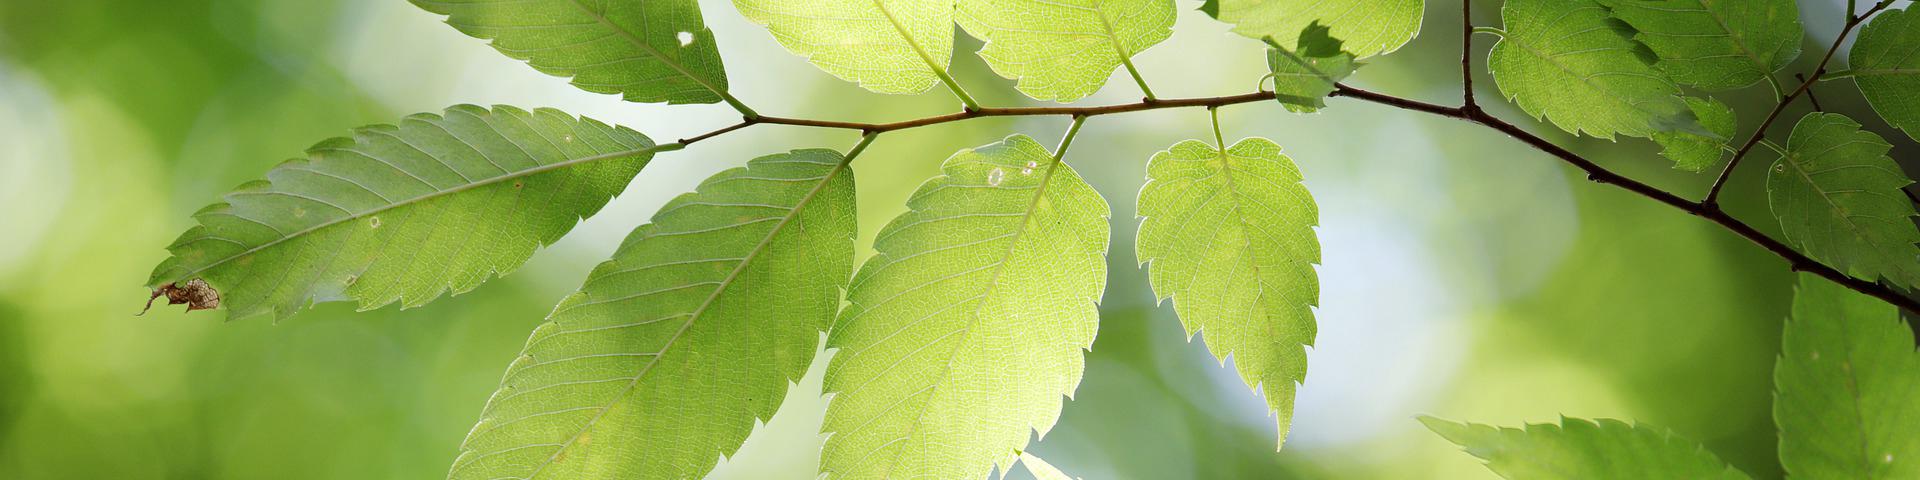 leaves light green header